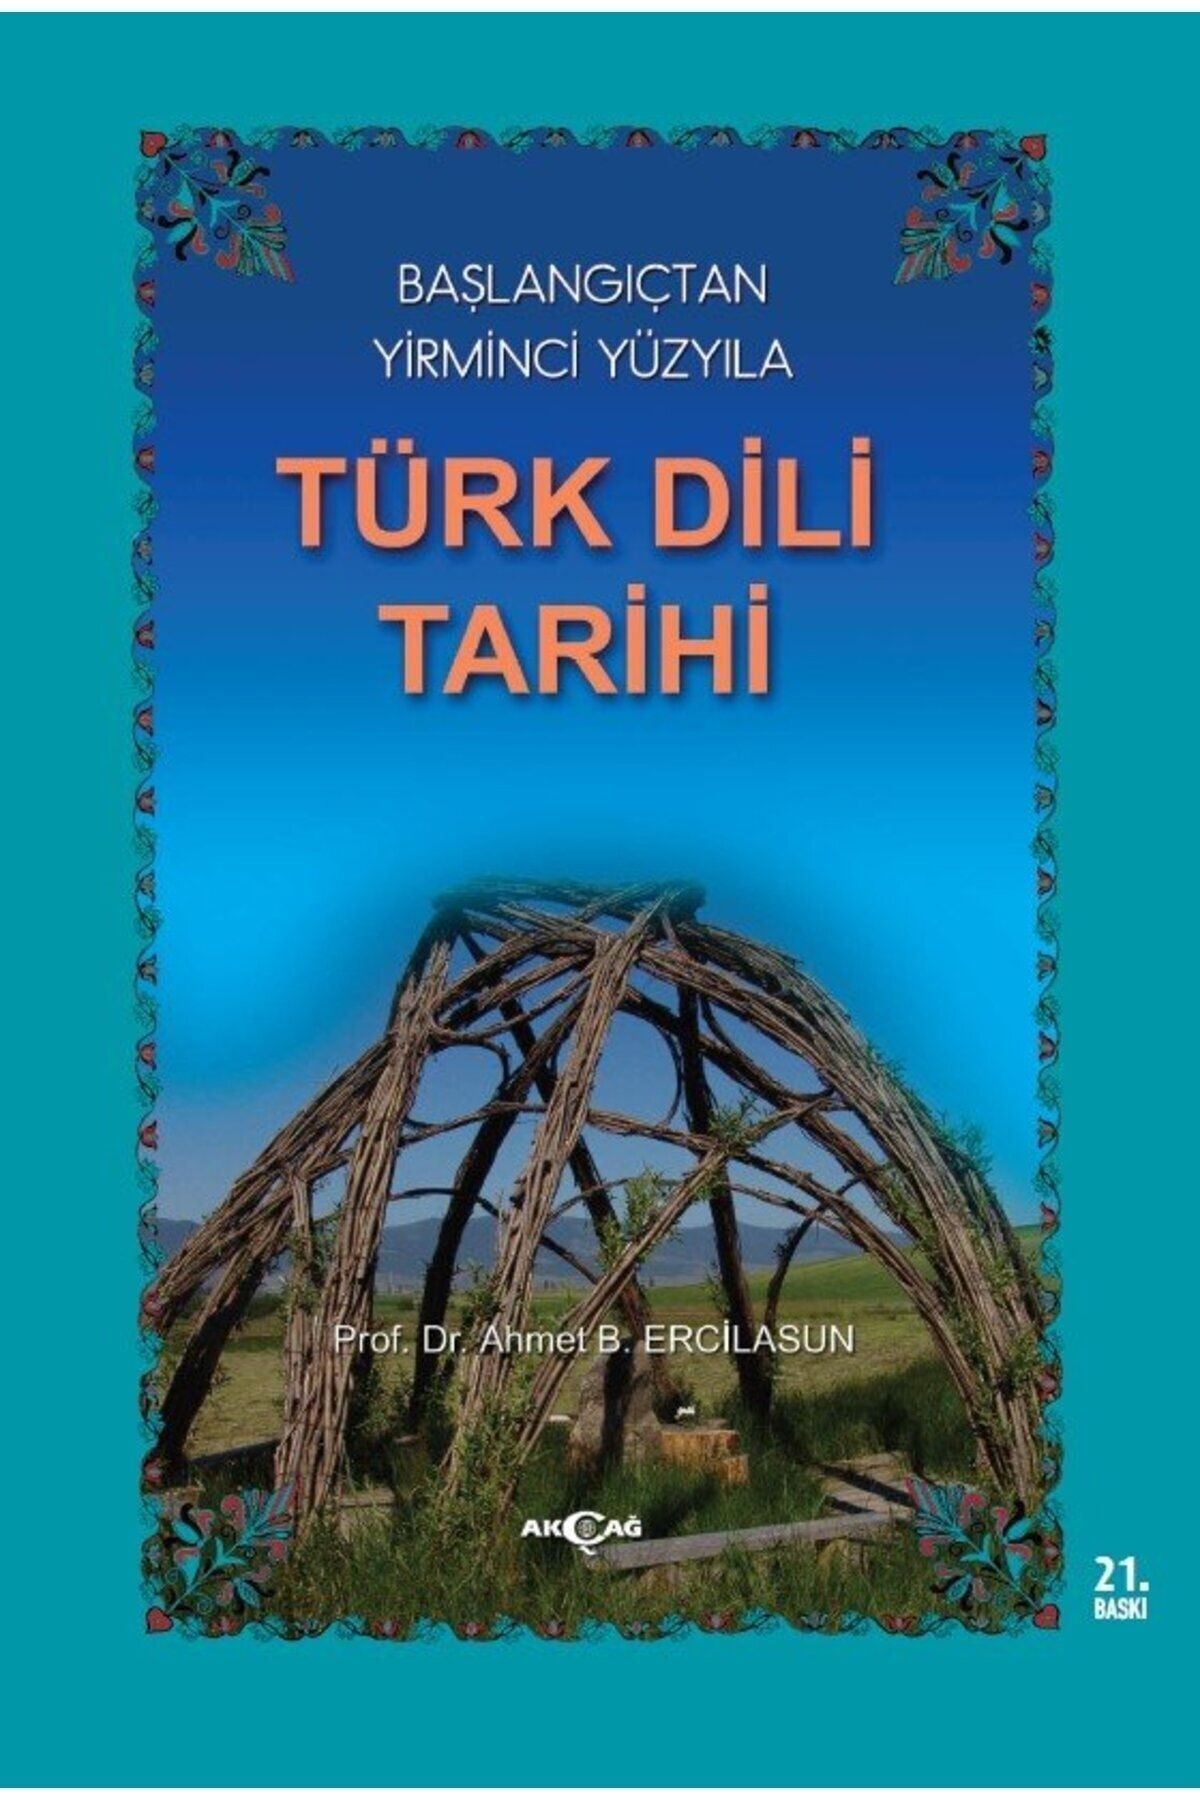 Akçağ Yayınları Başlangıçtan Yirminci Yüzyıla Türk Dili Tarihi